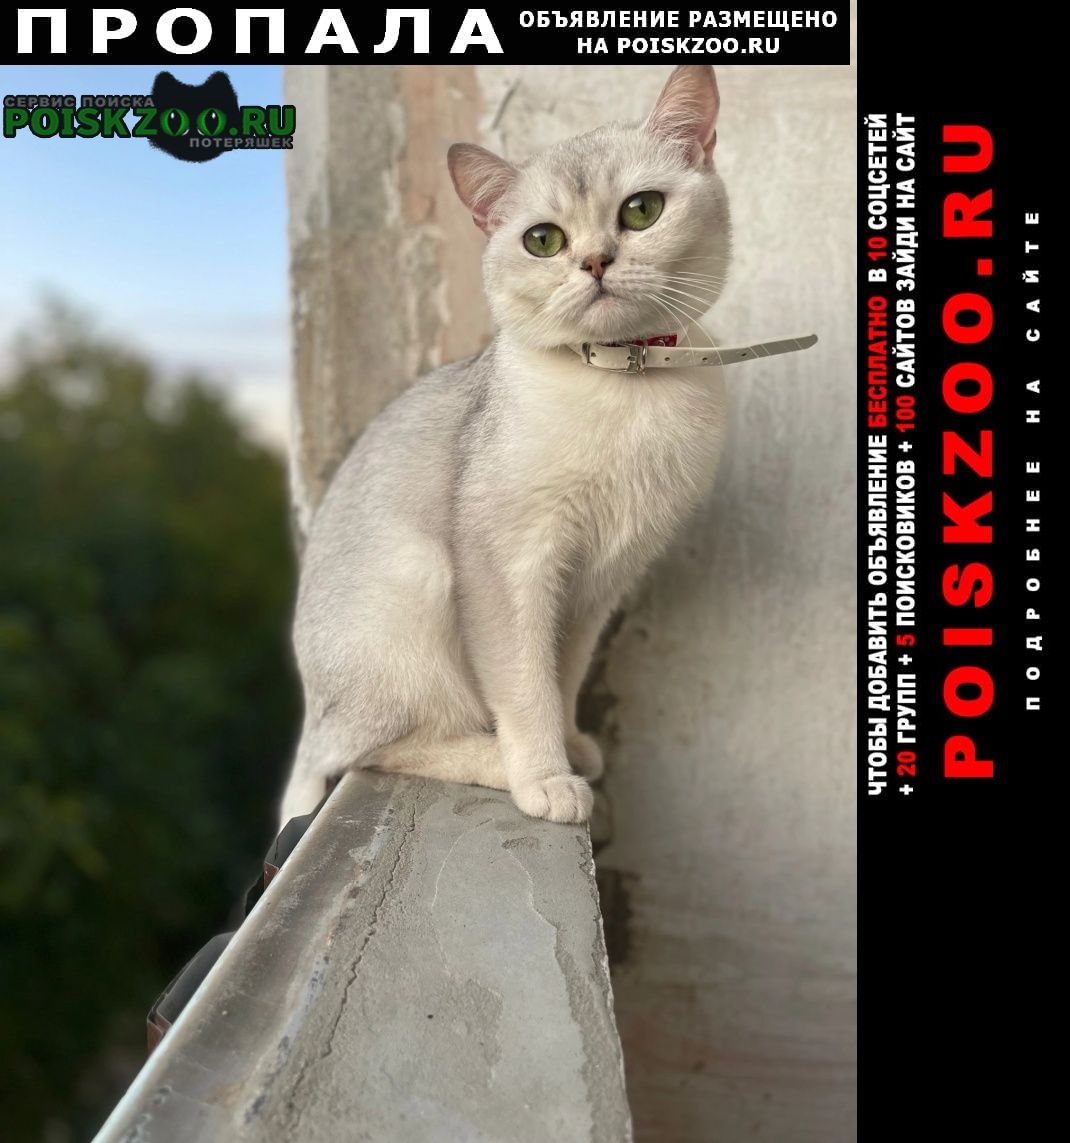 Пропала кошка за вознаграждение Пятигорск